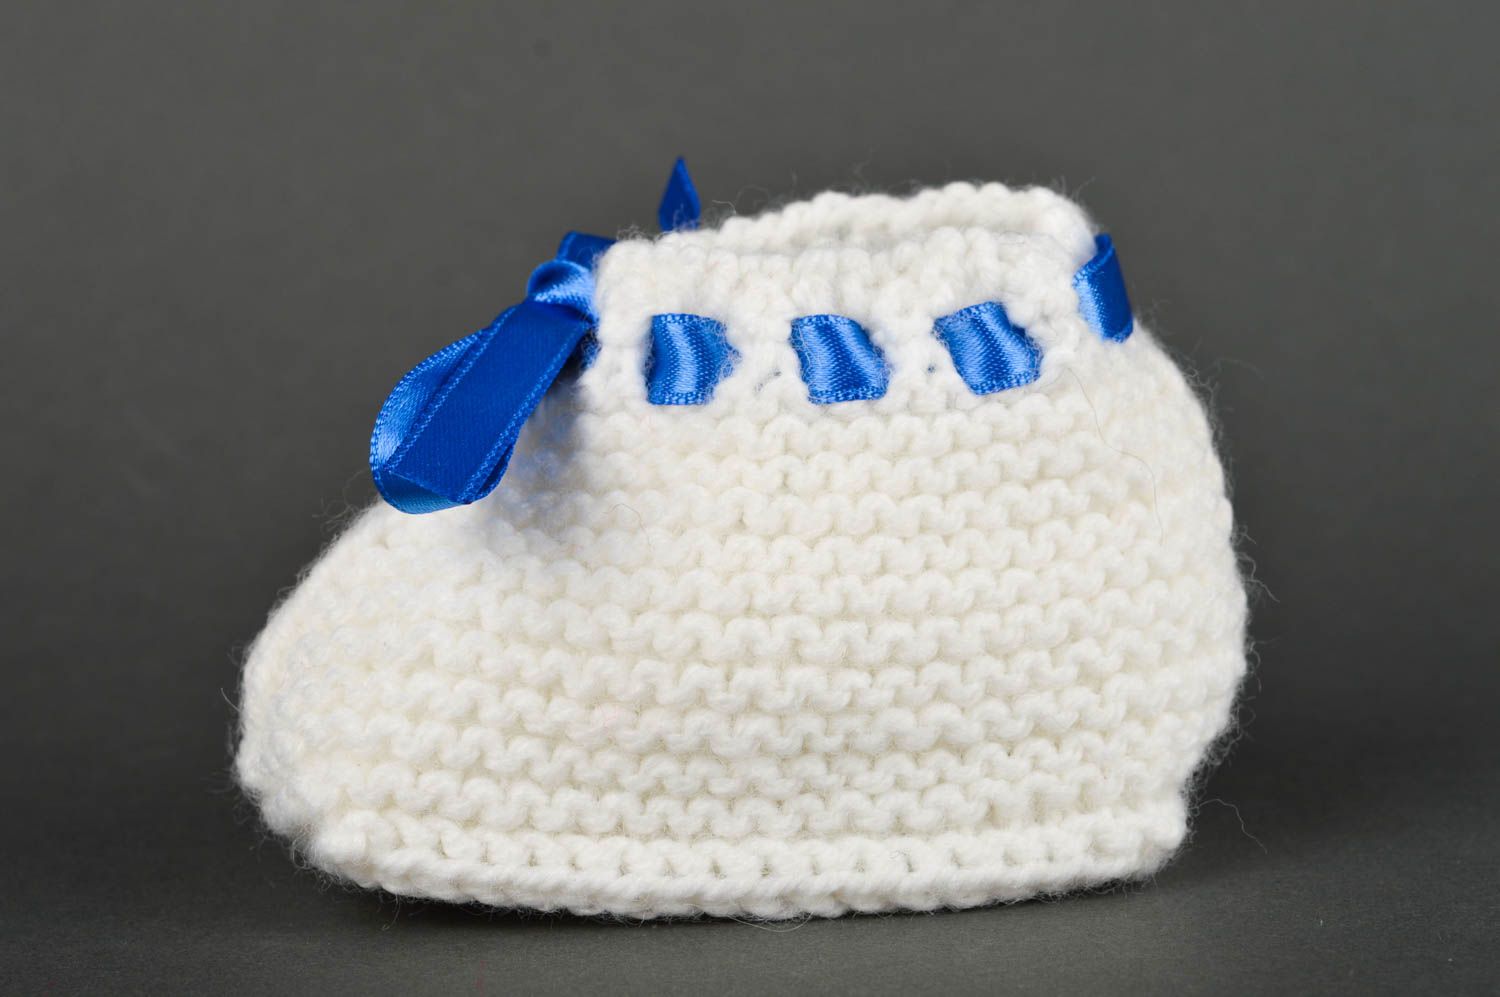 Handmade crochet baby booties warm booties baby accessories gift ideas photo 3